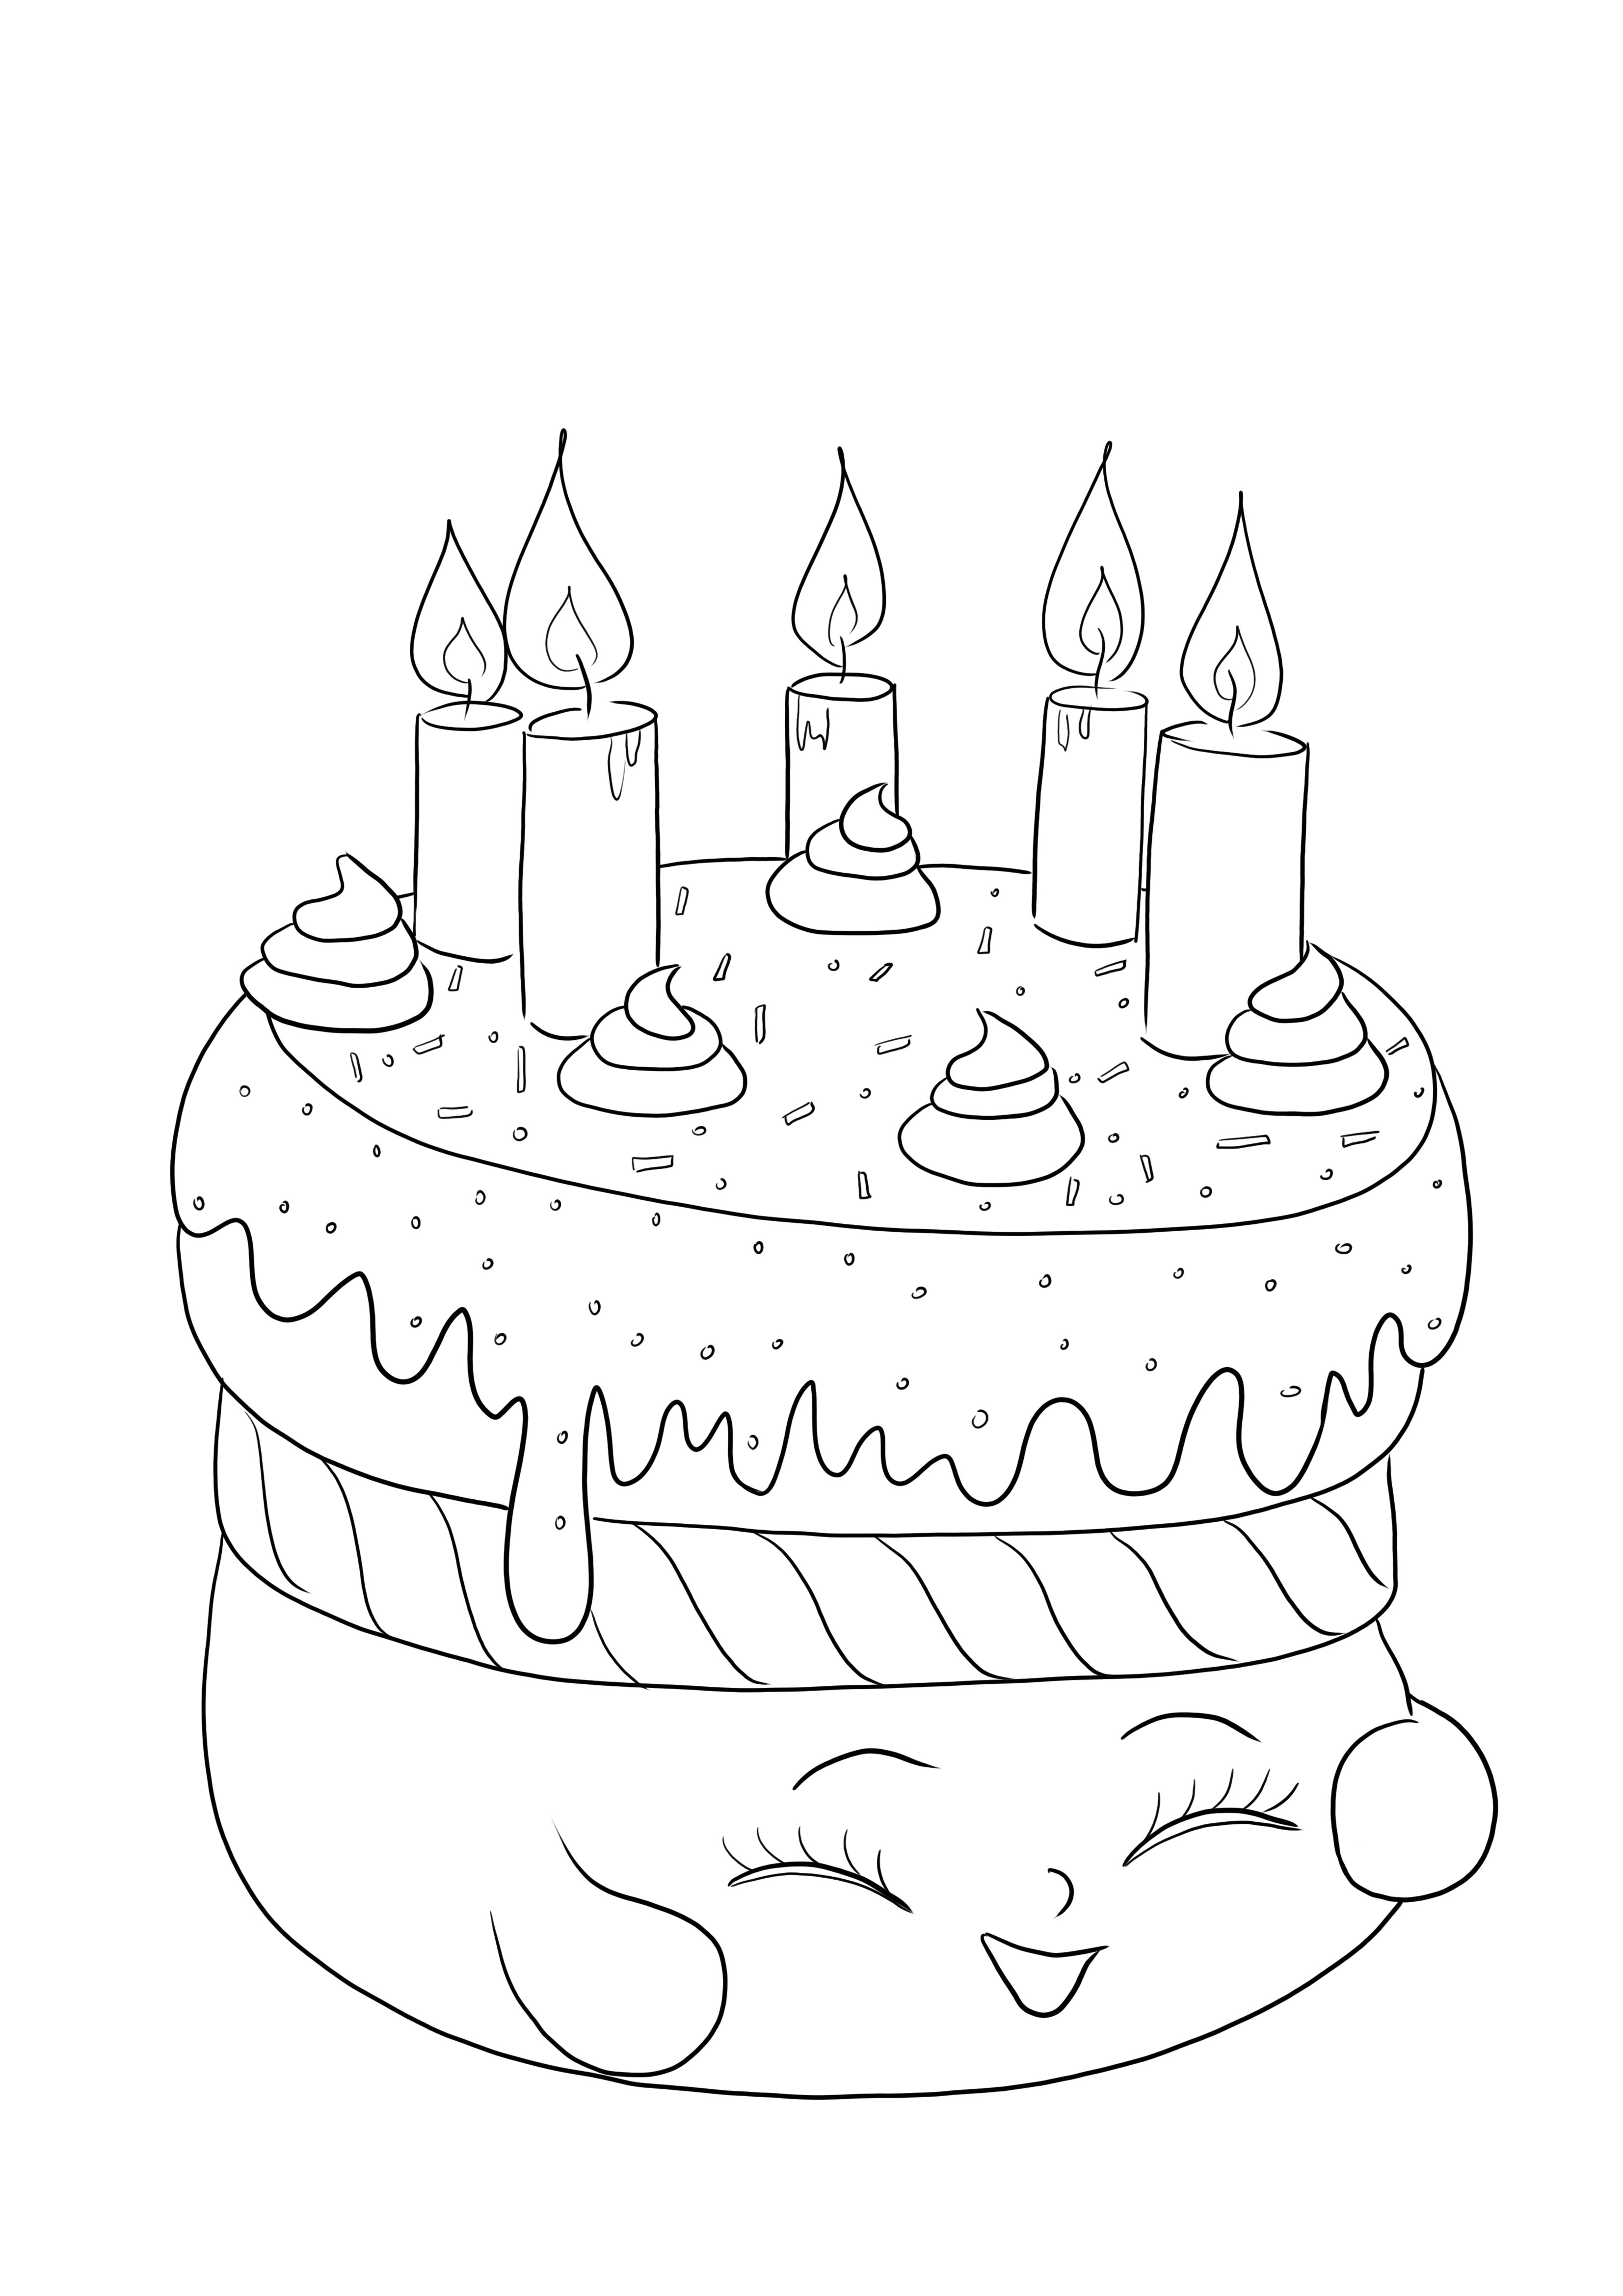 Folha de colorir super fofa do Cake Wishes Shopkin grátis para baixar e colorir